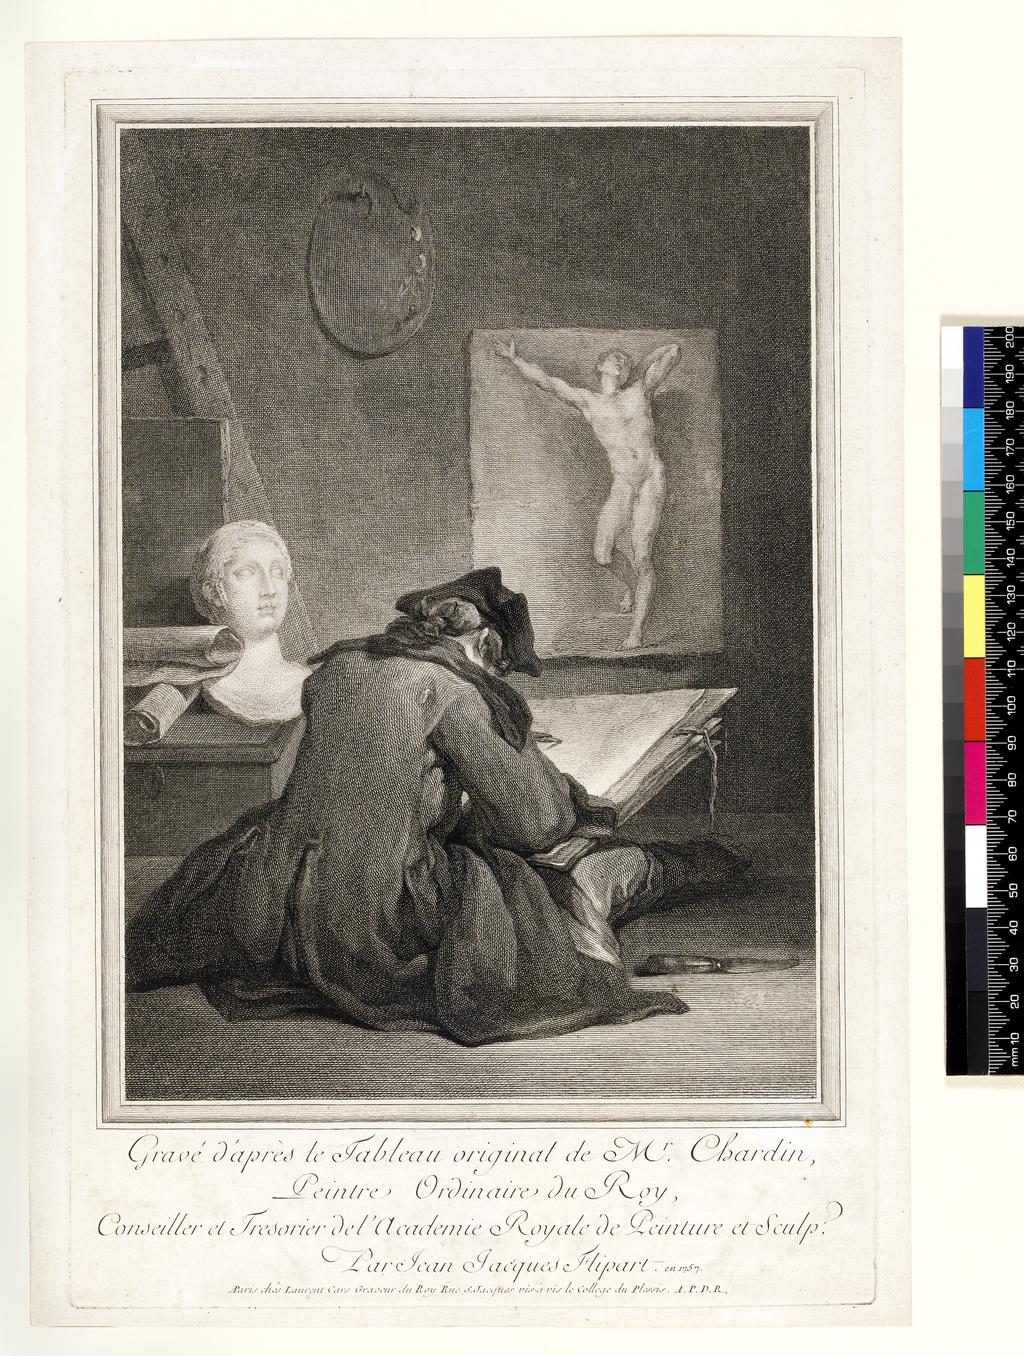 An image of Le Dessinateur. Flipart, Jean Jacques (printmaker). After Chardin, Jean Baptiste Siméon. Cars, Laurent (publisher). Etching, engraving. Announced in the 'Mercure de France' December 1757.